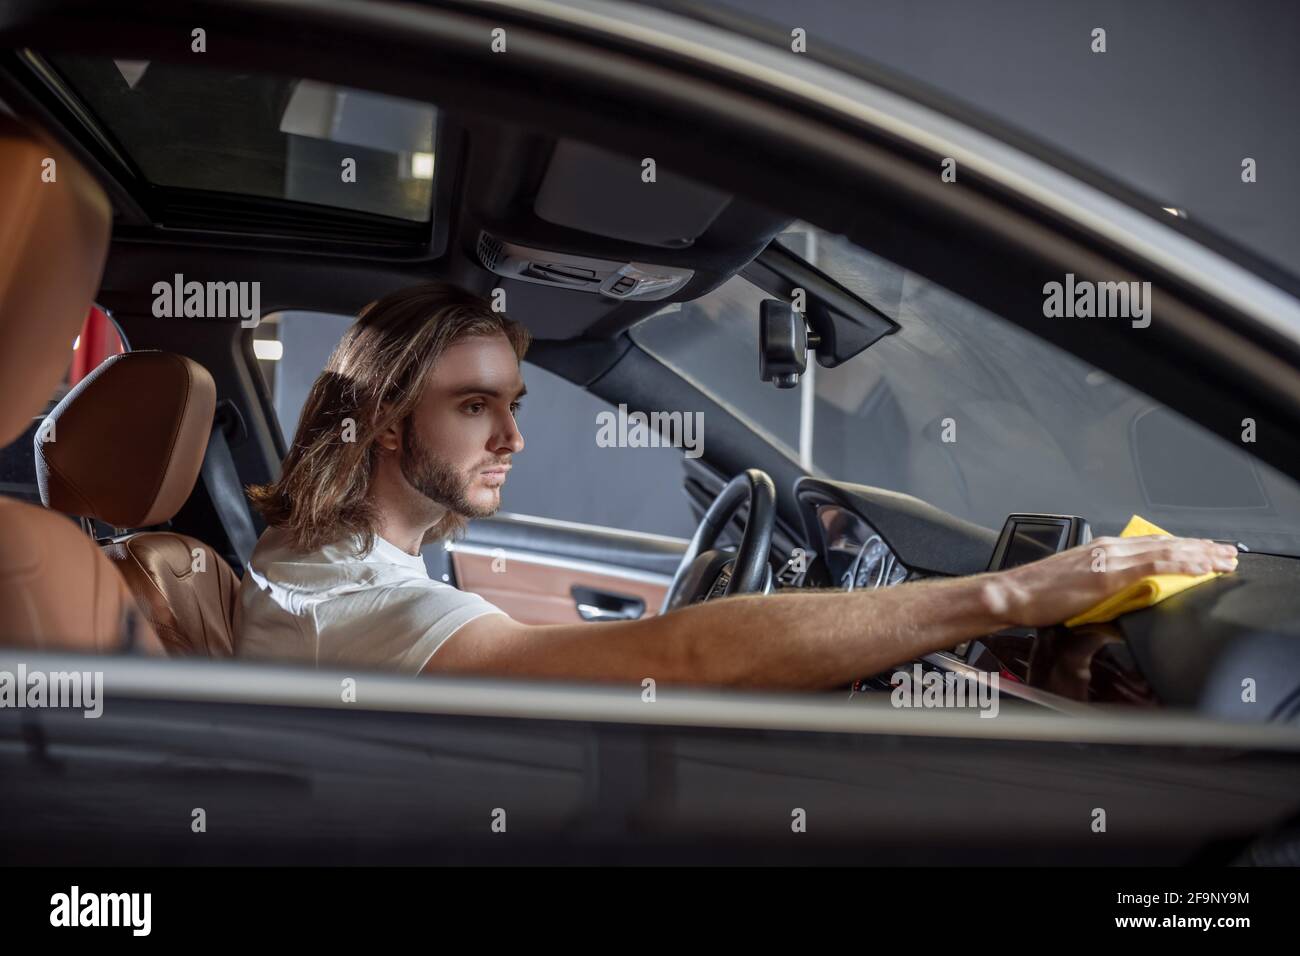 Homme assis dans le tableau de bord d'essuyage de voiture Banque D'Images